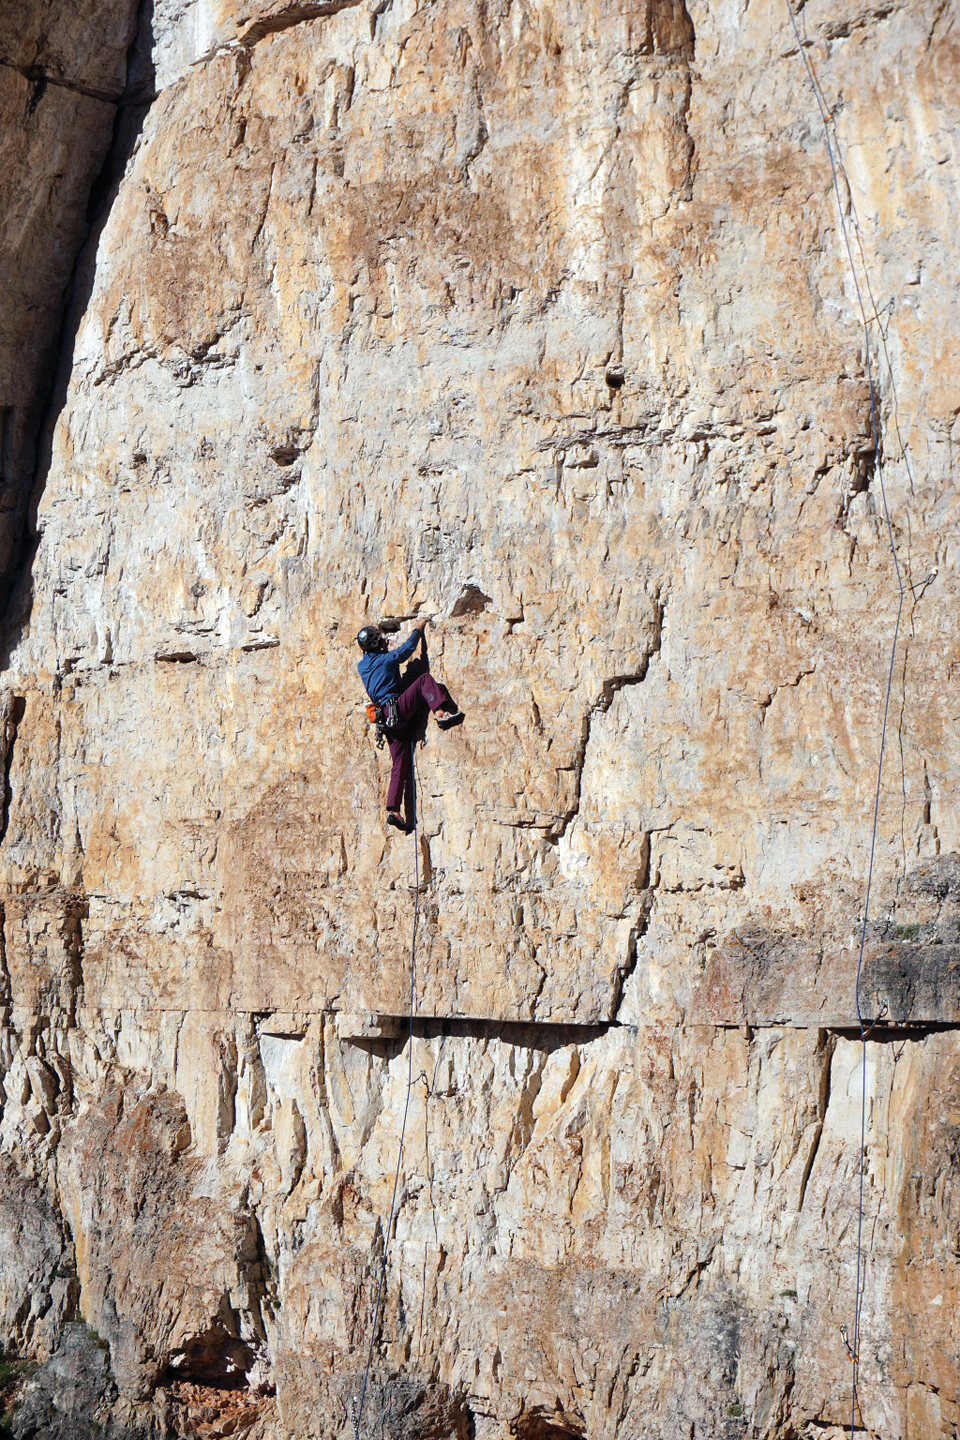  이탈리아 돌로미테의 치마 피콜로Cima Piccolo (2,856m)를 등반하는 유석재. 